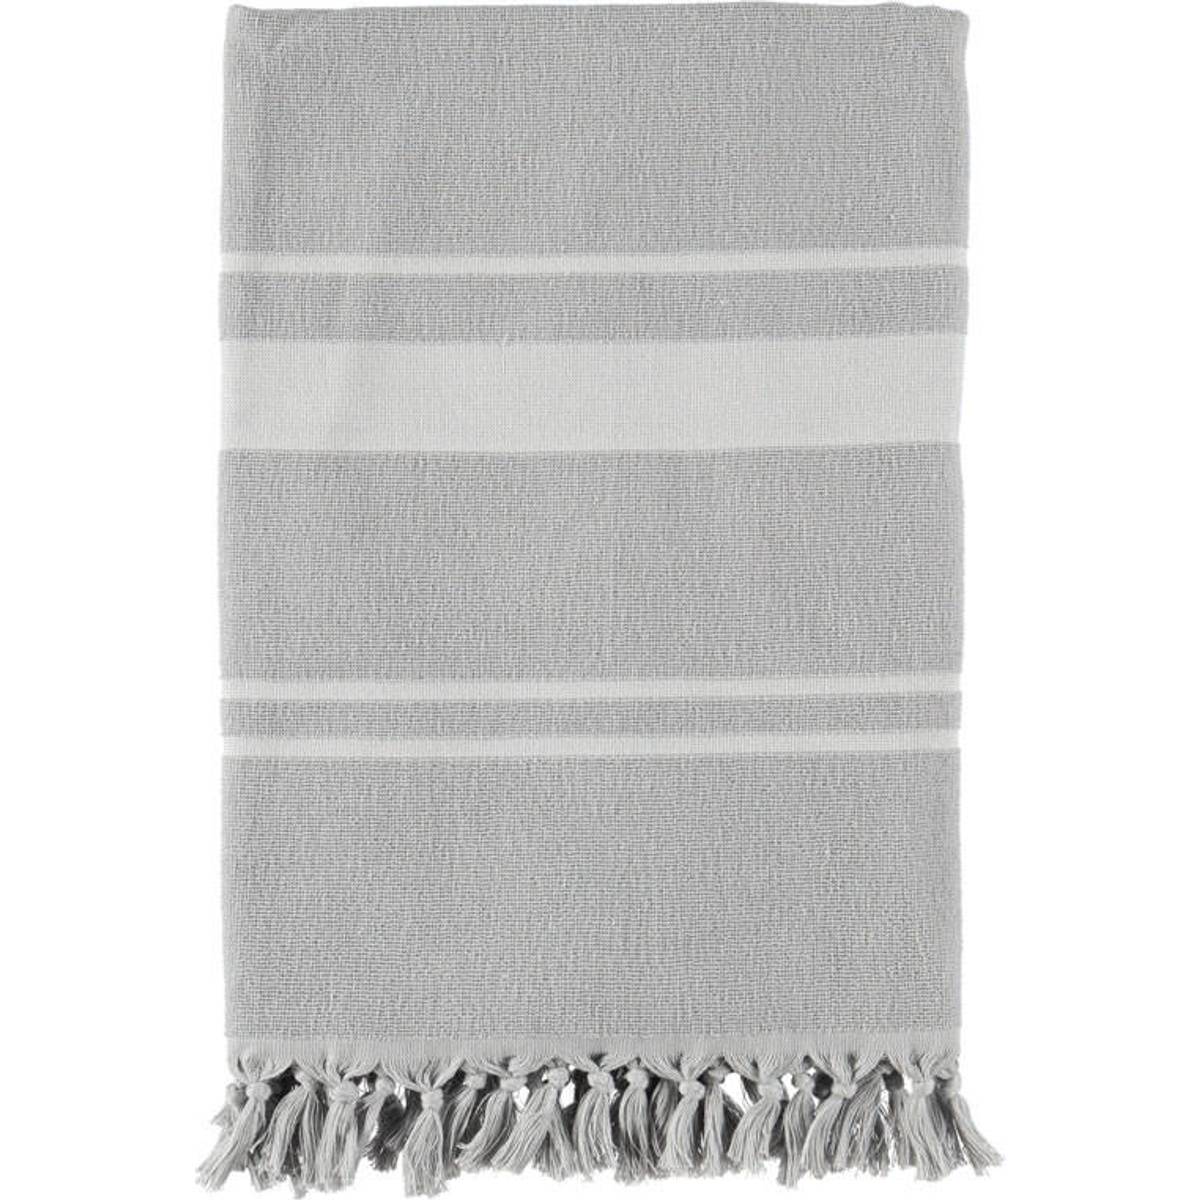 pu10b7c0 vipp håndklæder sammenlign priser hos pricerunner ...